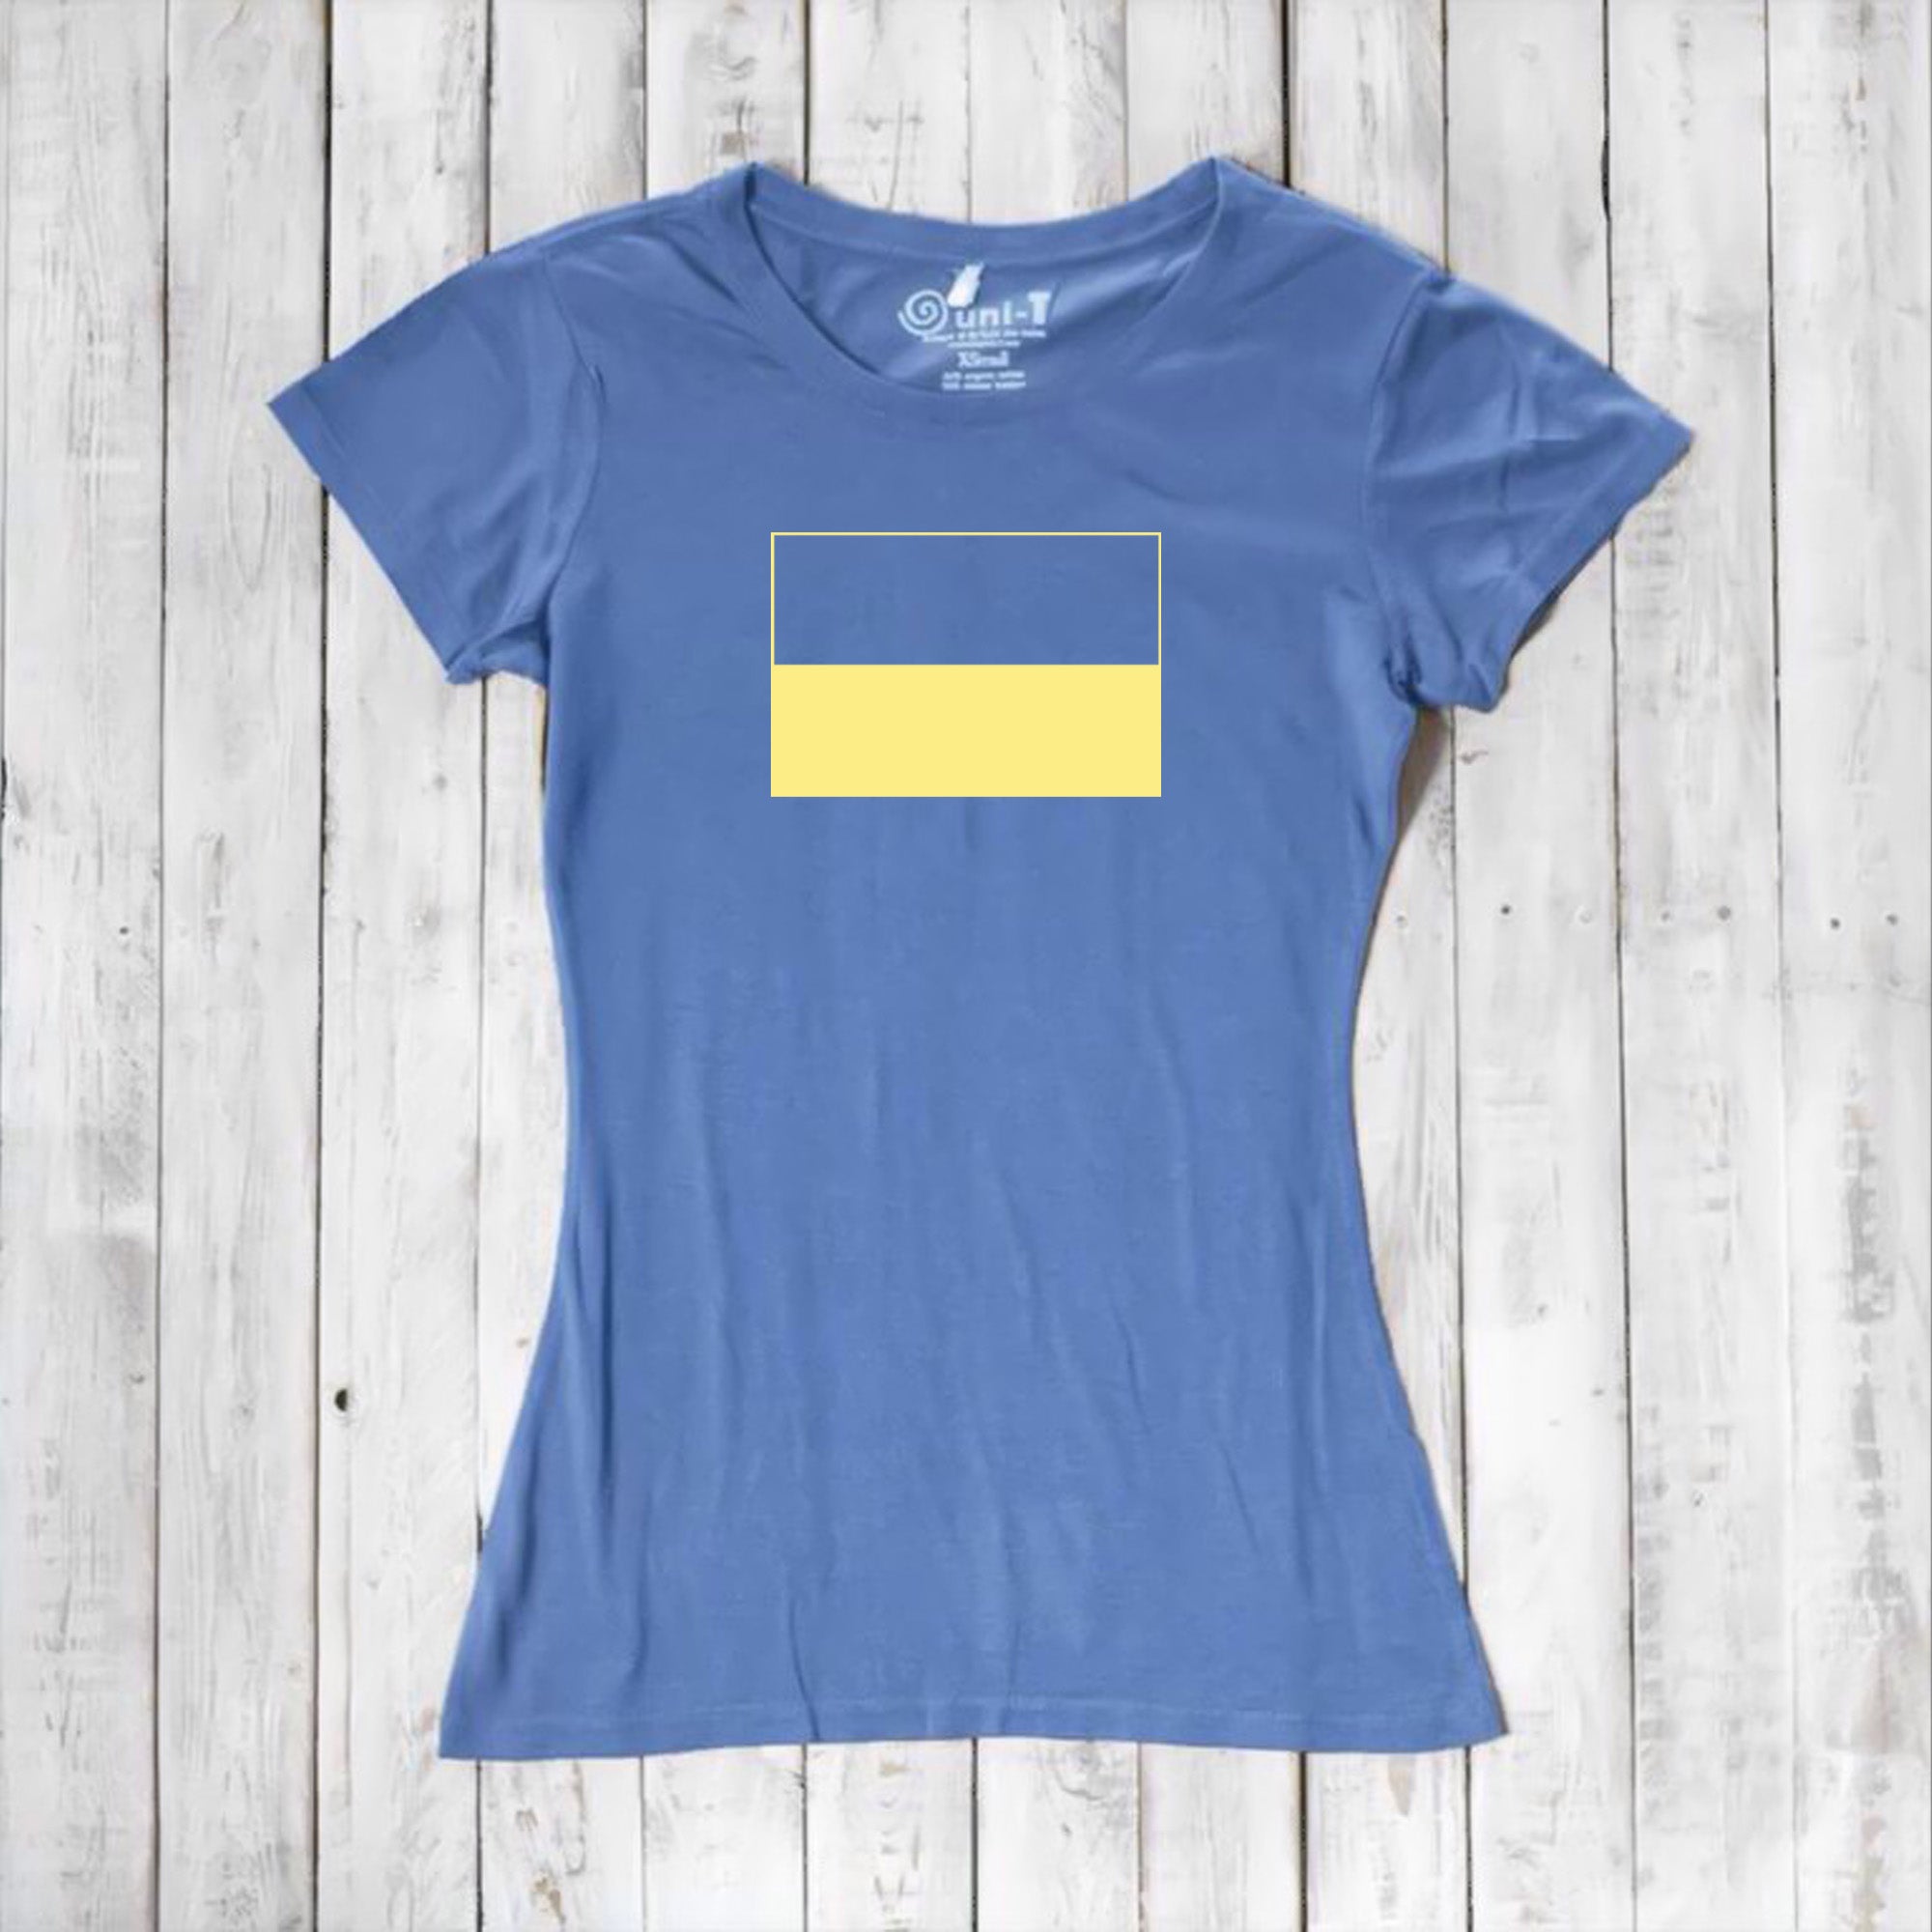 Ukraine T-shirt Fundraiser for Women Uni-T